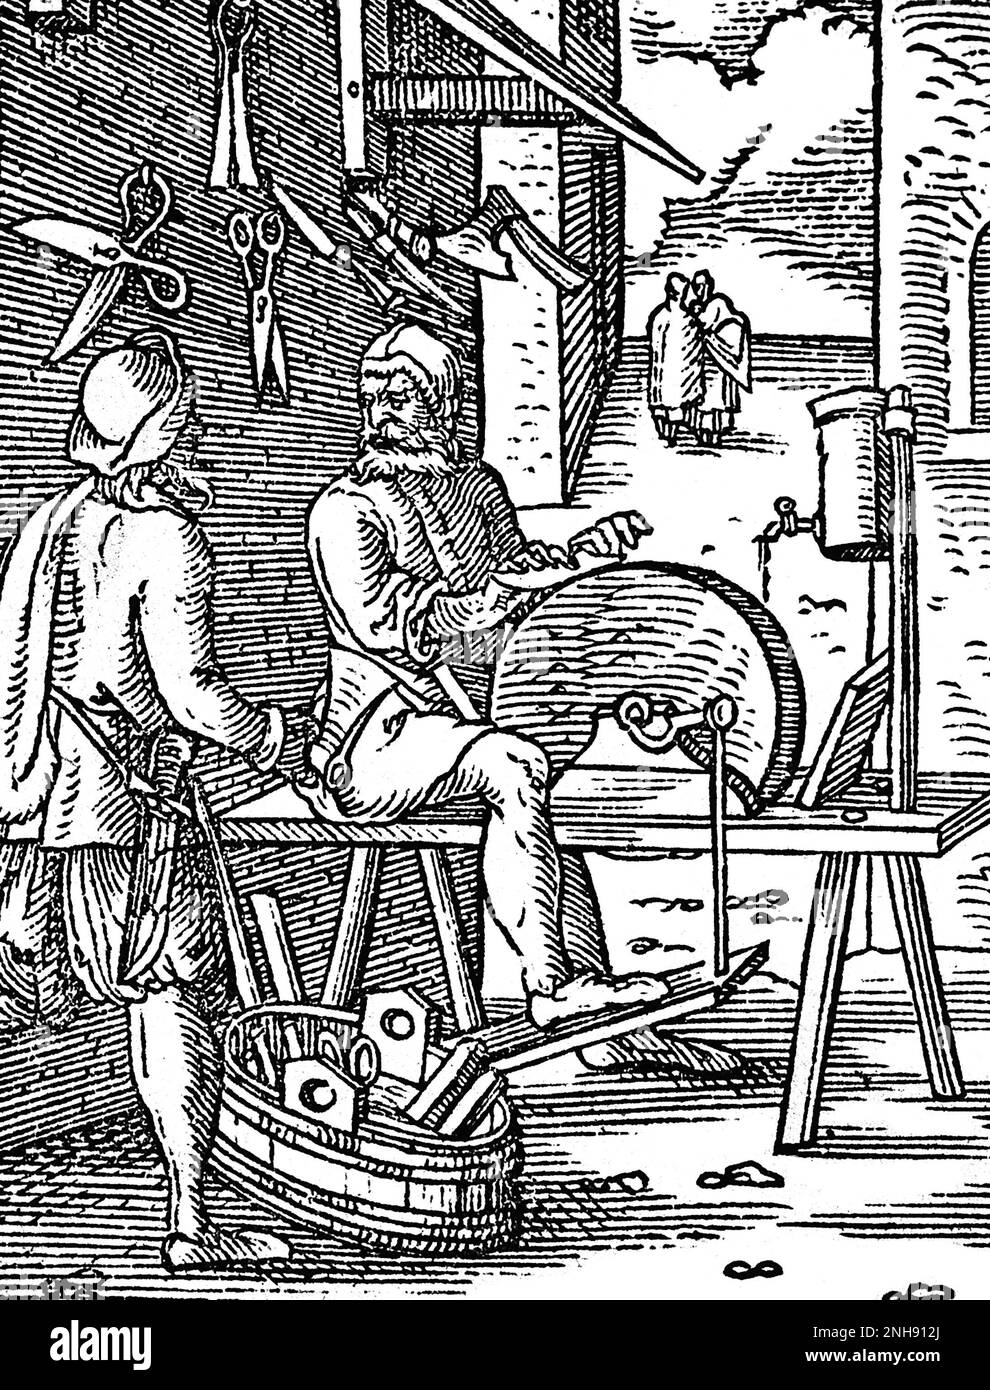 Une meuleuse de couteau aiguisant une lame sur une meule lorsqu'un client arrive avec un avion à affûter. Illustration du Livre des métiers de Jost Amman, 1568. Banque D'Images